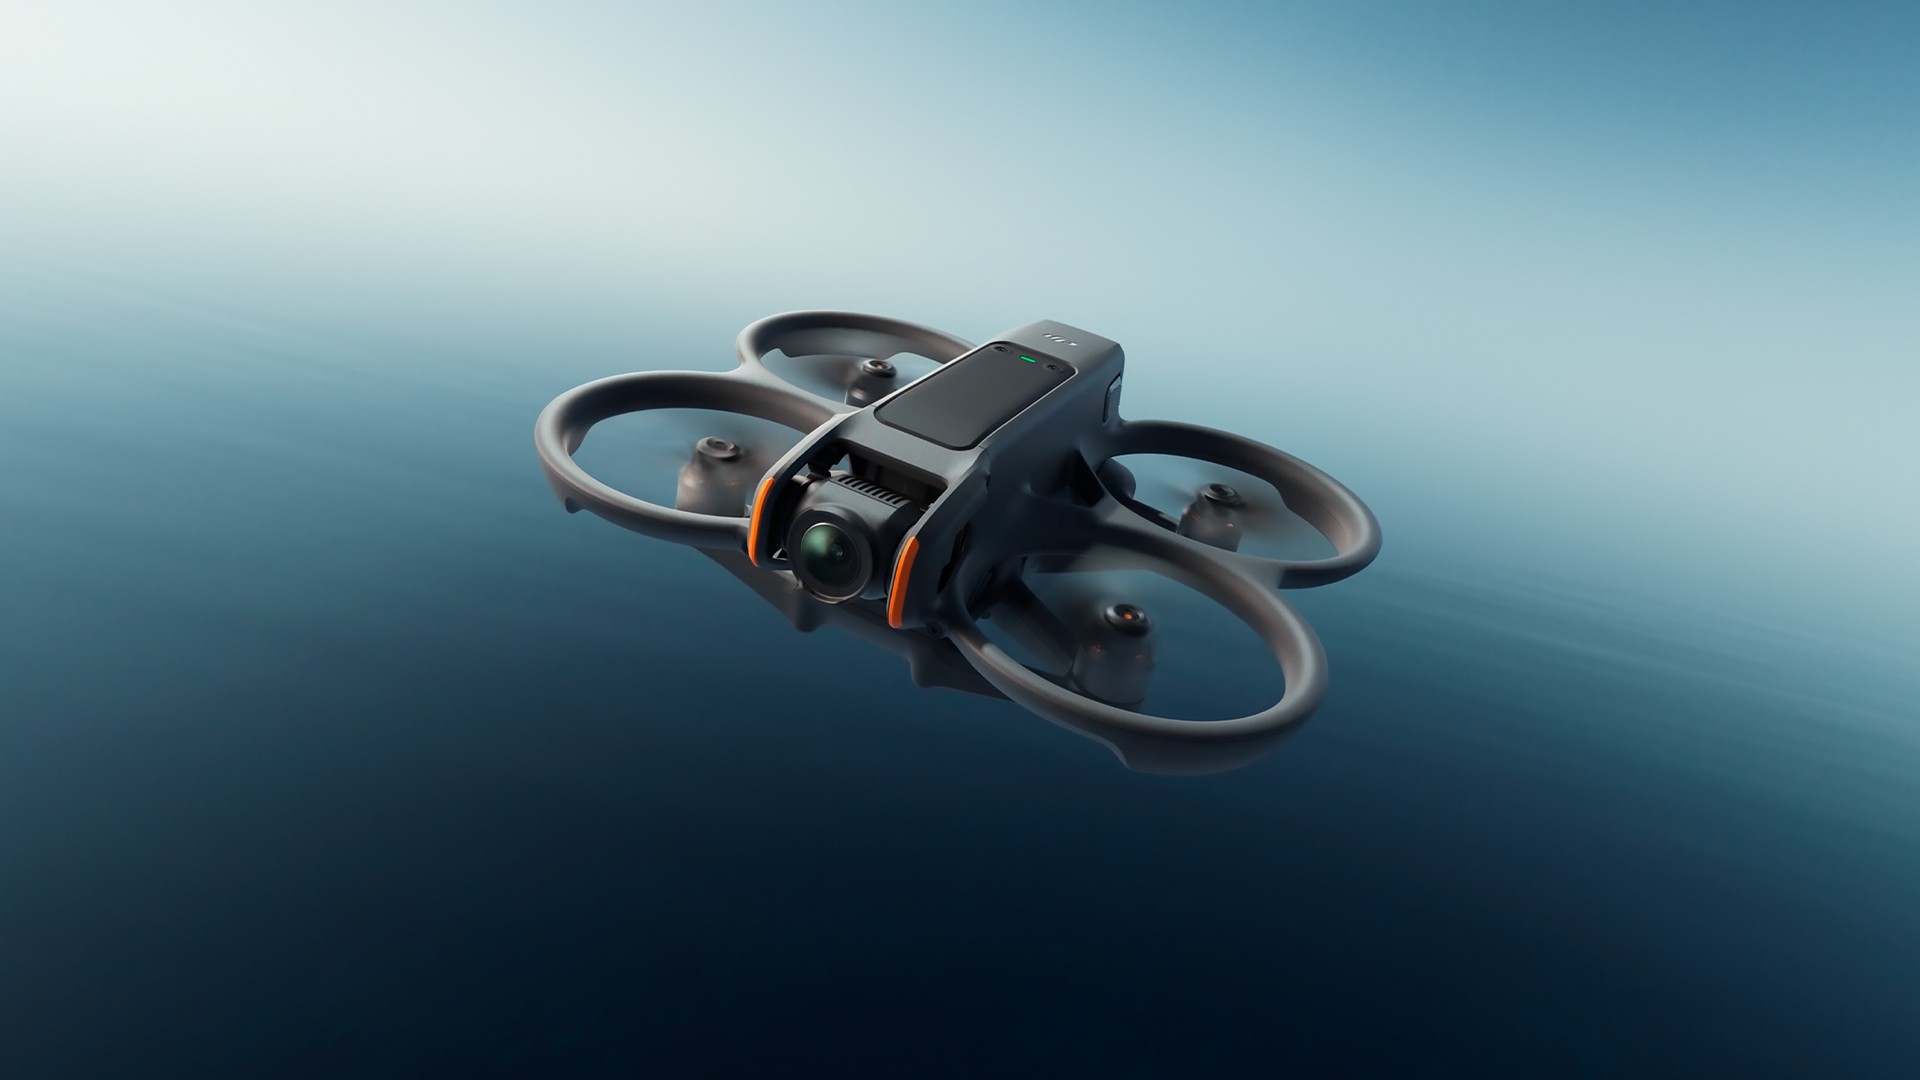 DJI Avata 2: drone é lançado com suporte para gravação em 4K HDR e integração com óculos VR - TudoCelular.com